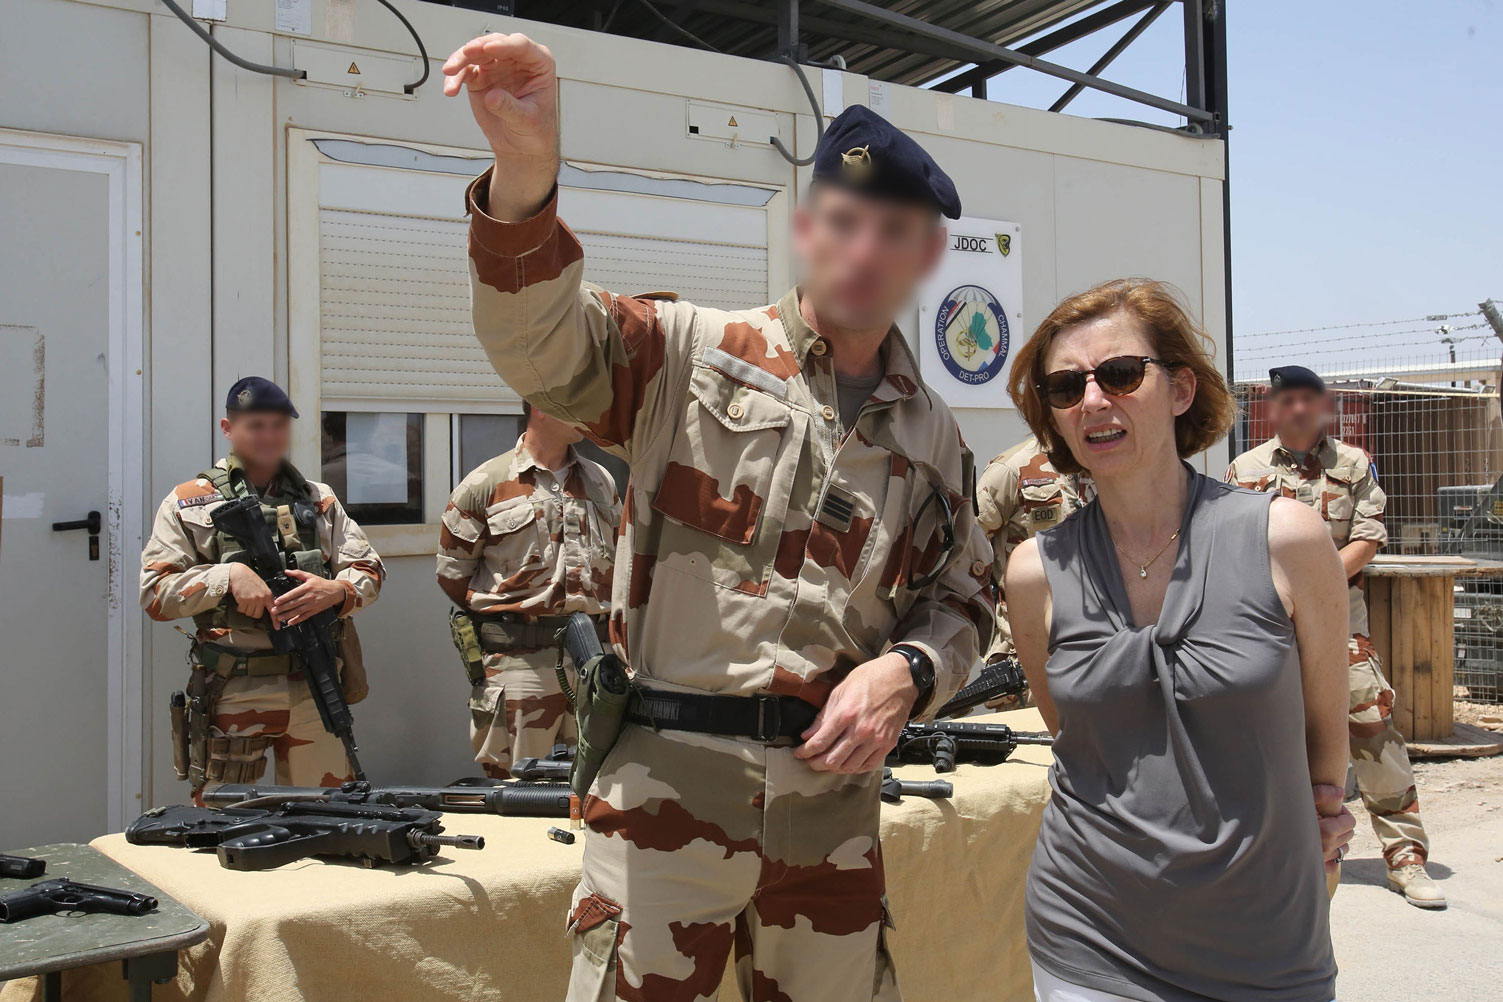 وزيرة الجيوش الفرنسية فلورنس بارلي تزور قوات بلادها في قاعدة "اتش 5" الجوية الأردنية